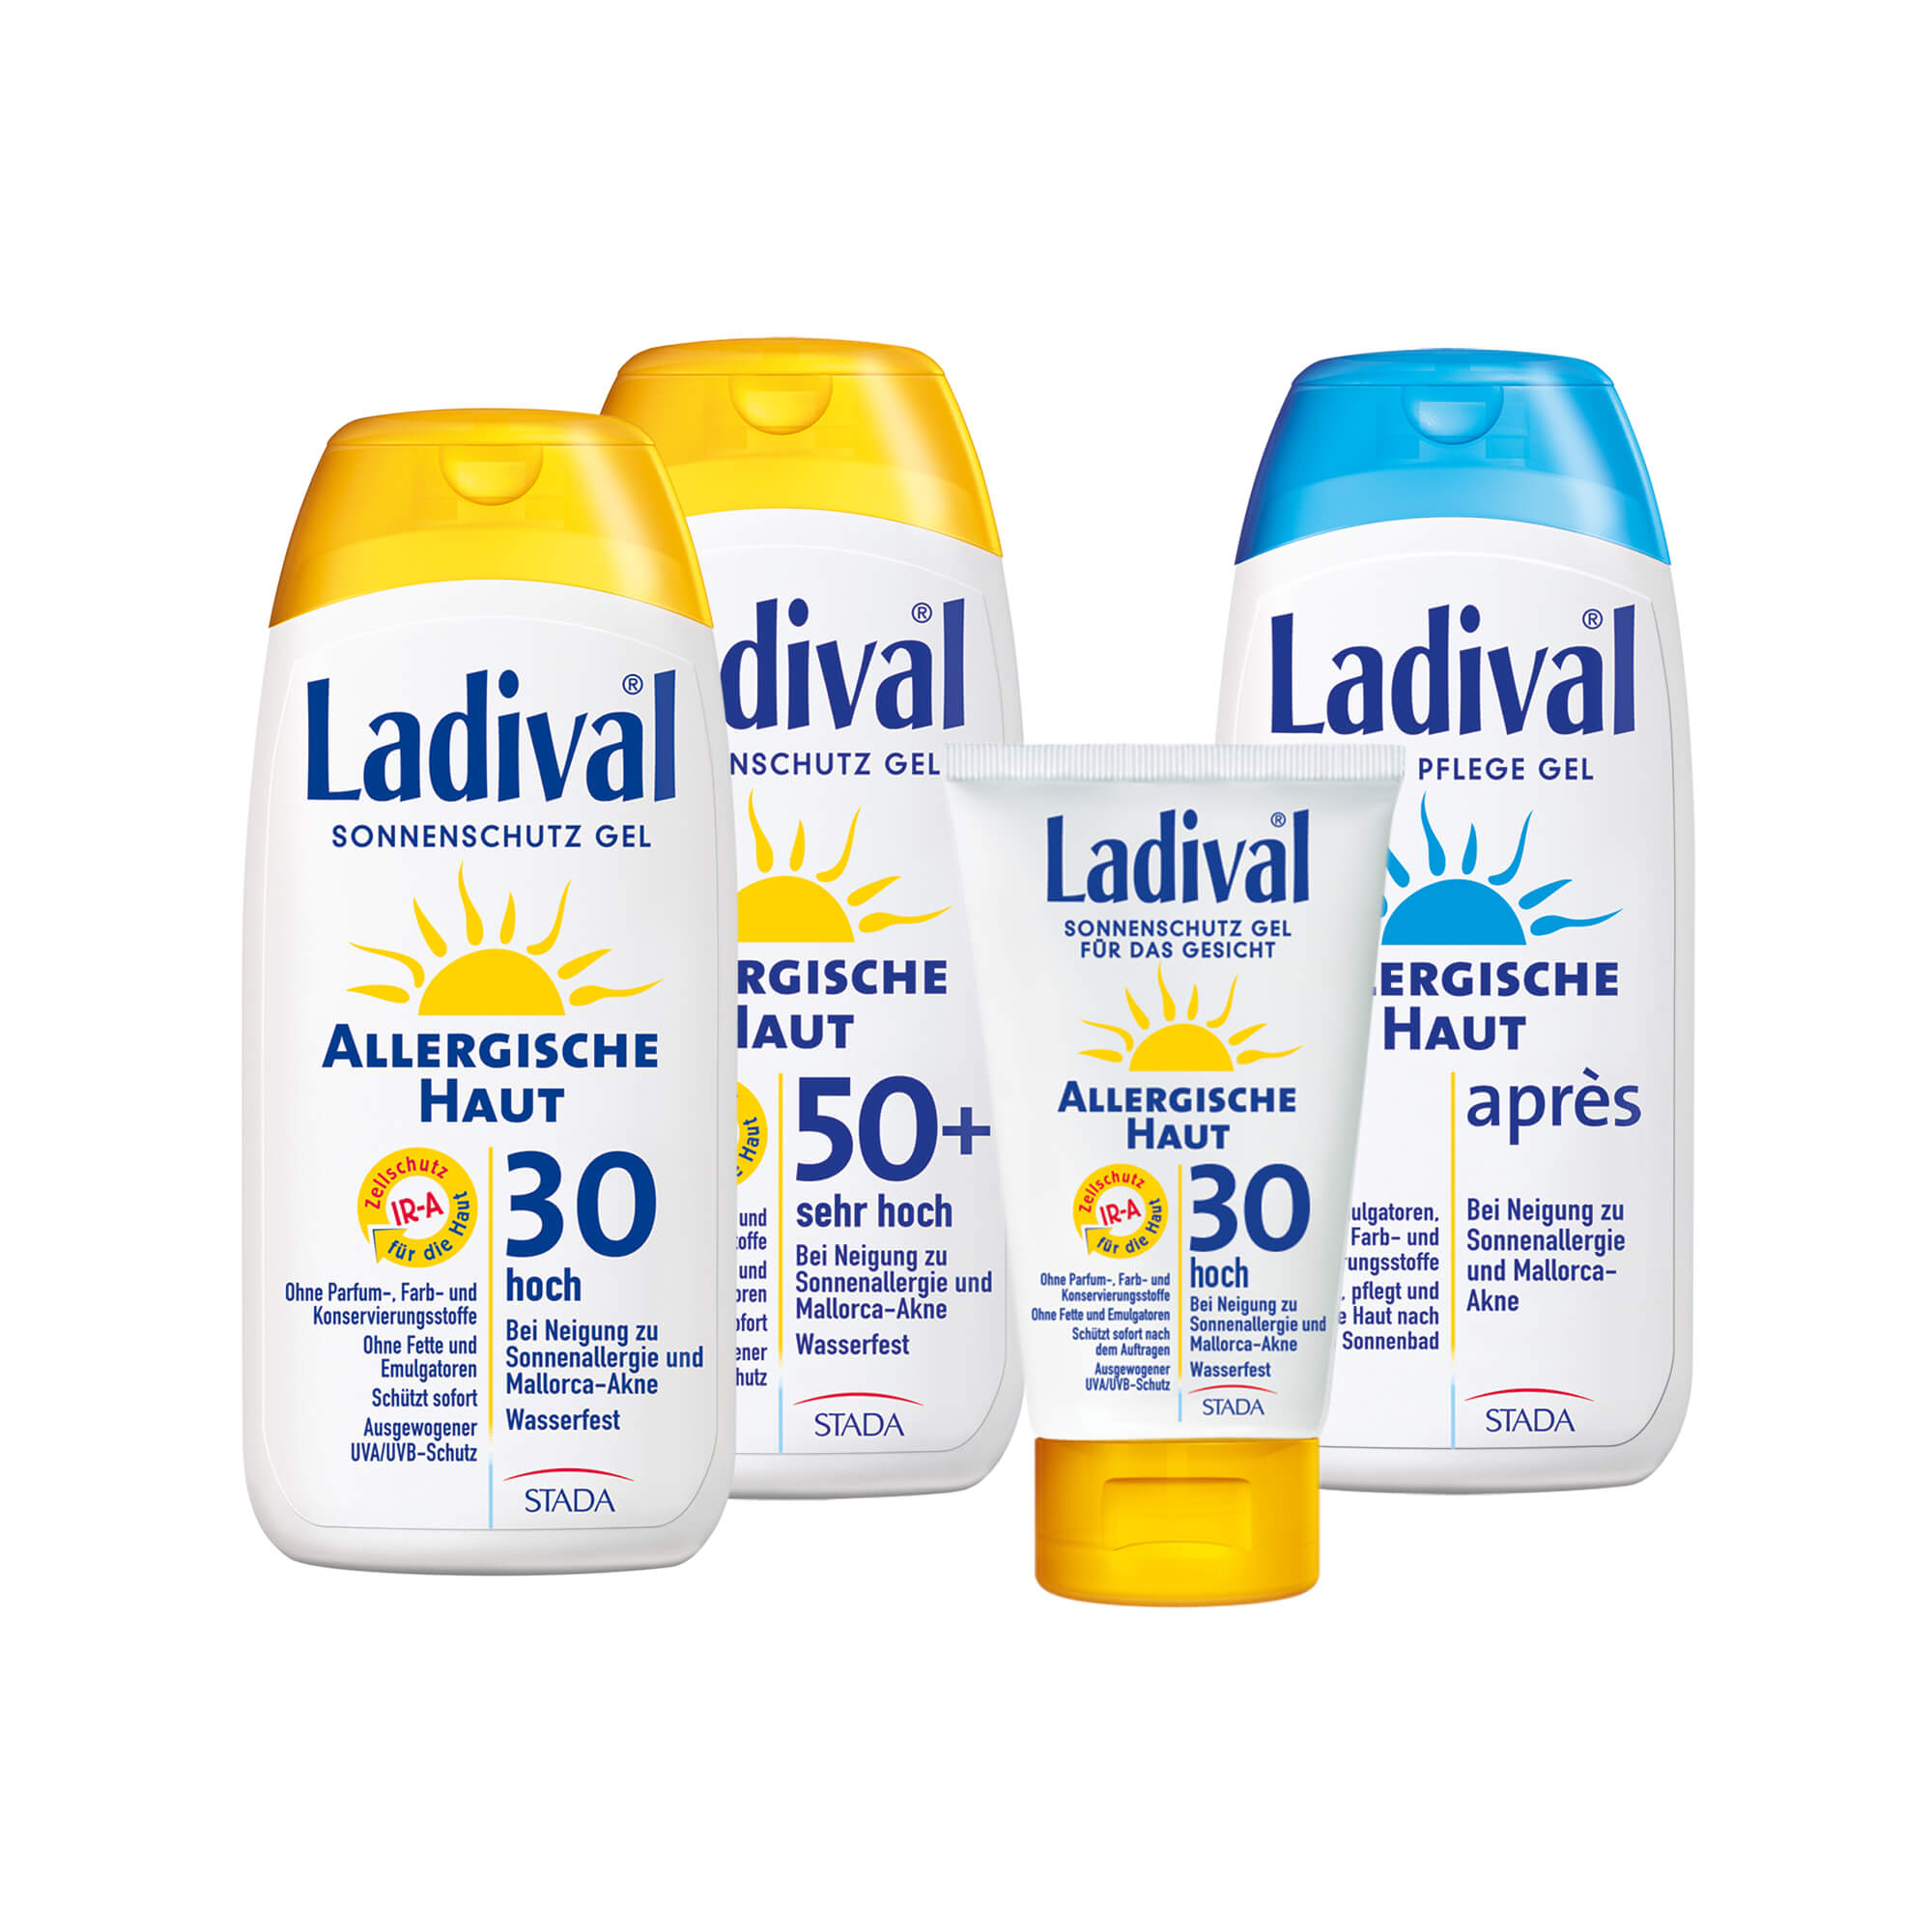 Dieses Ladival Allergische Haut-Set besteht aus 1 x Gel LSF 30, 1 x Gel LSF 50+, 1 x Gel Gesicht LSF 30 und  1 x Apres Gel.